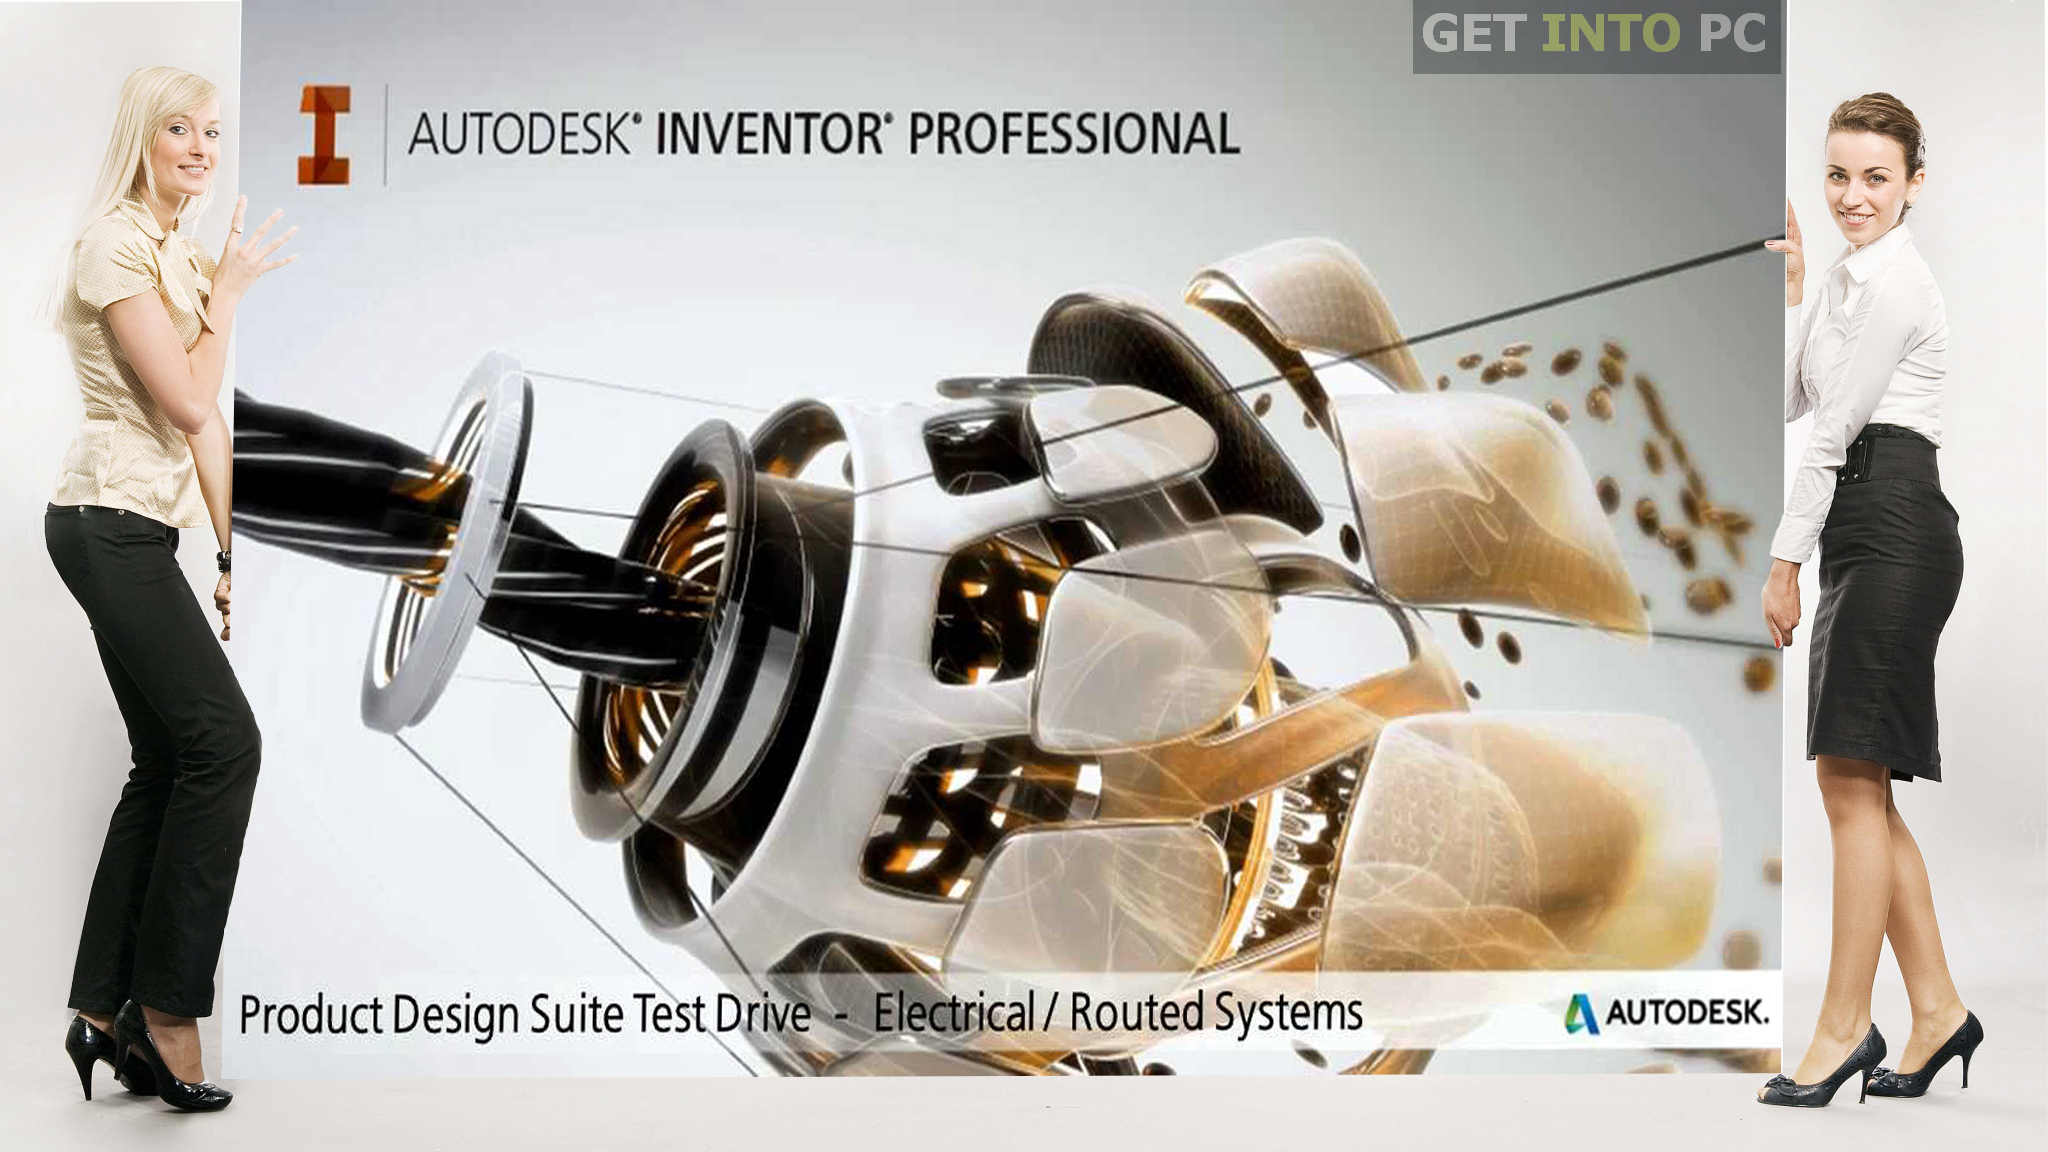 Autodesk Inventor LT 2014 Setup Free Download